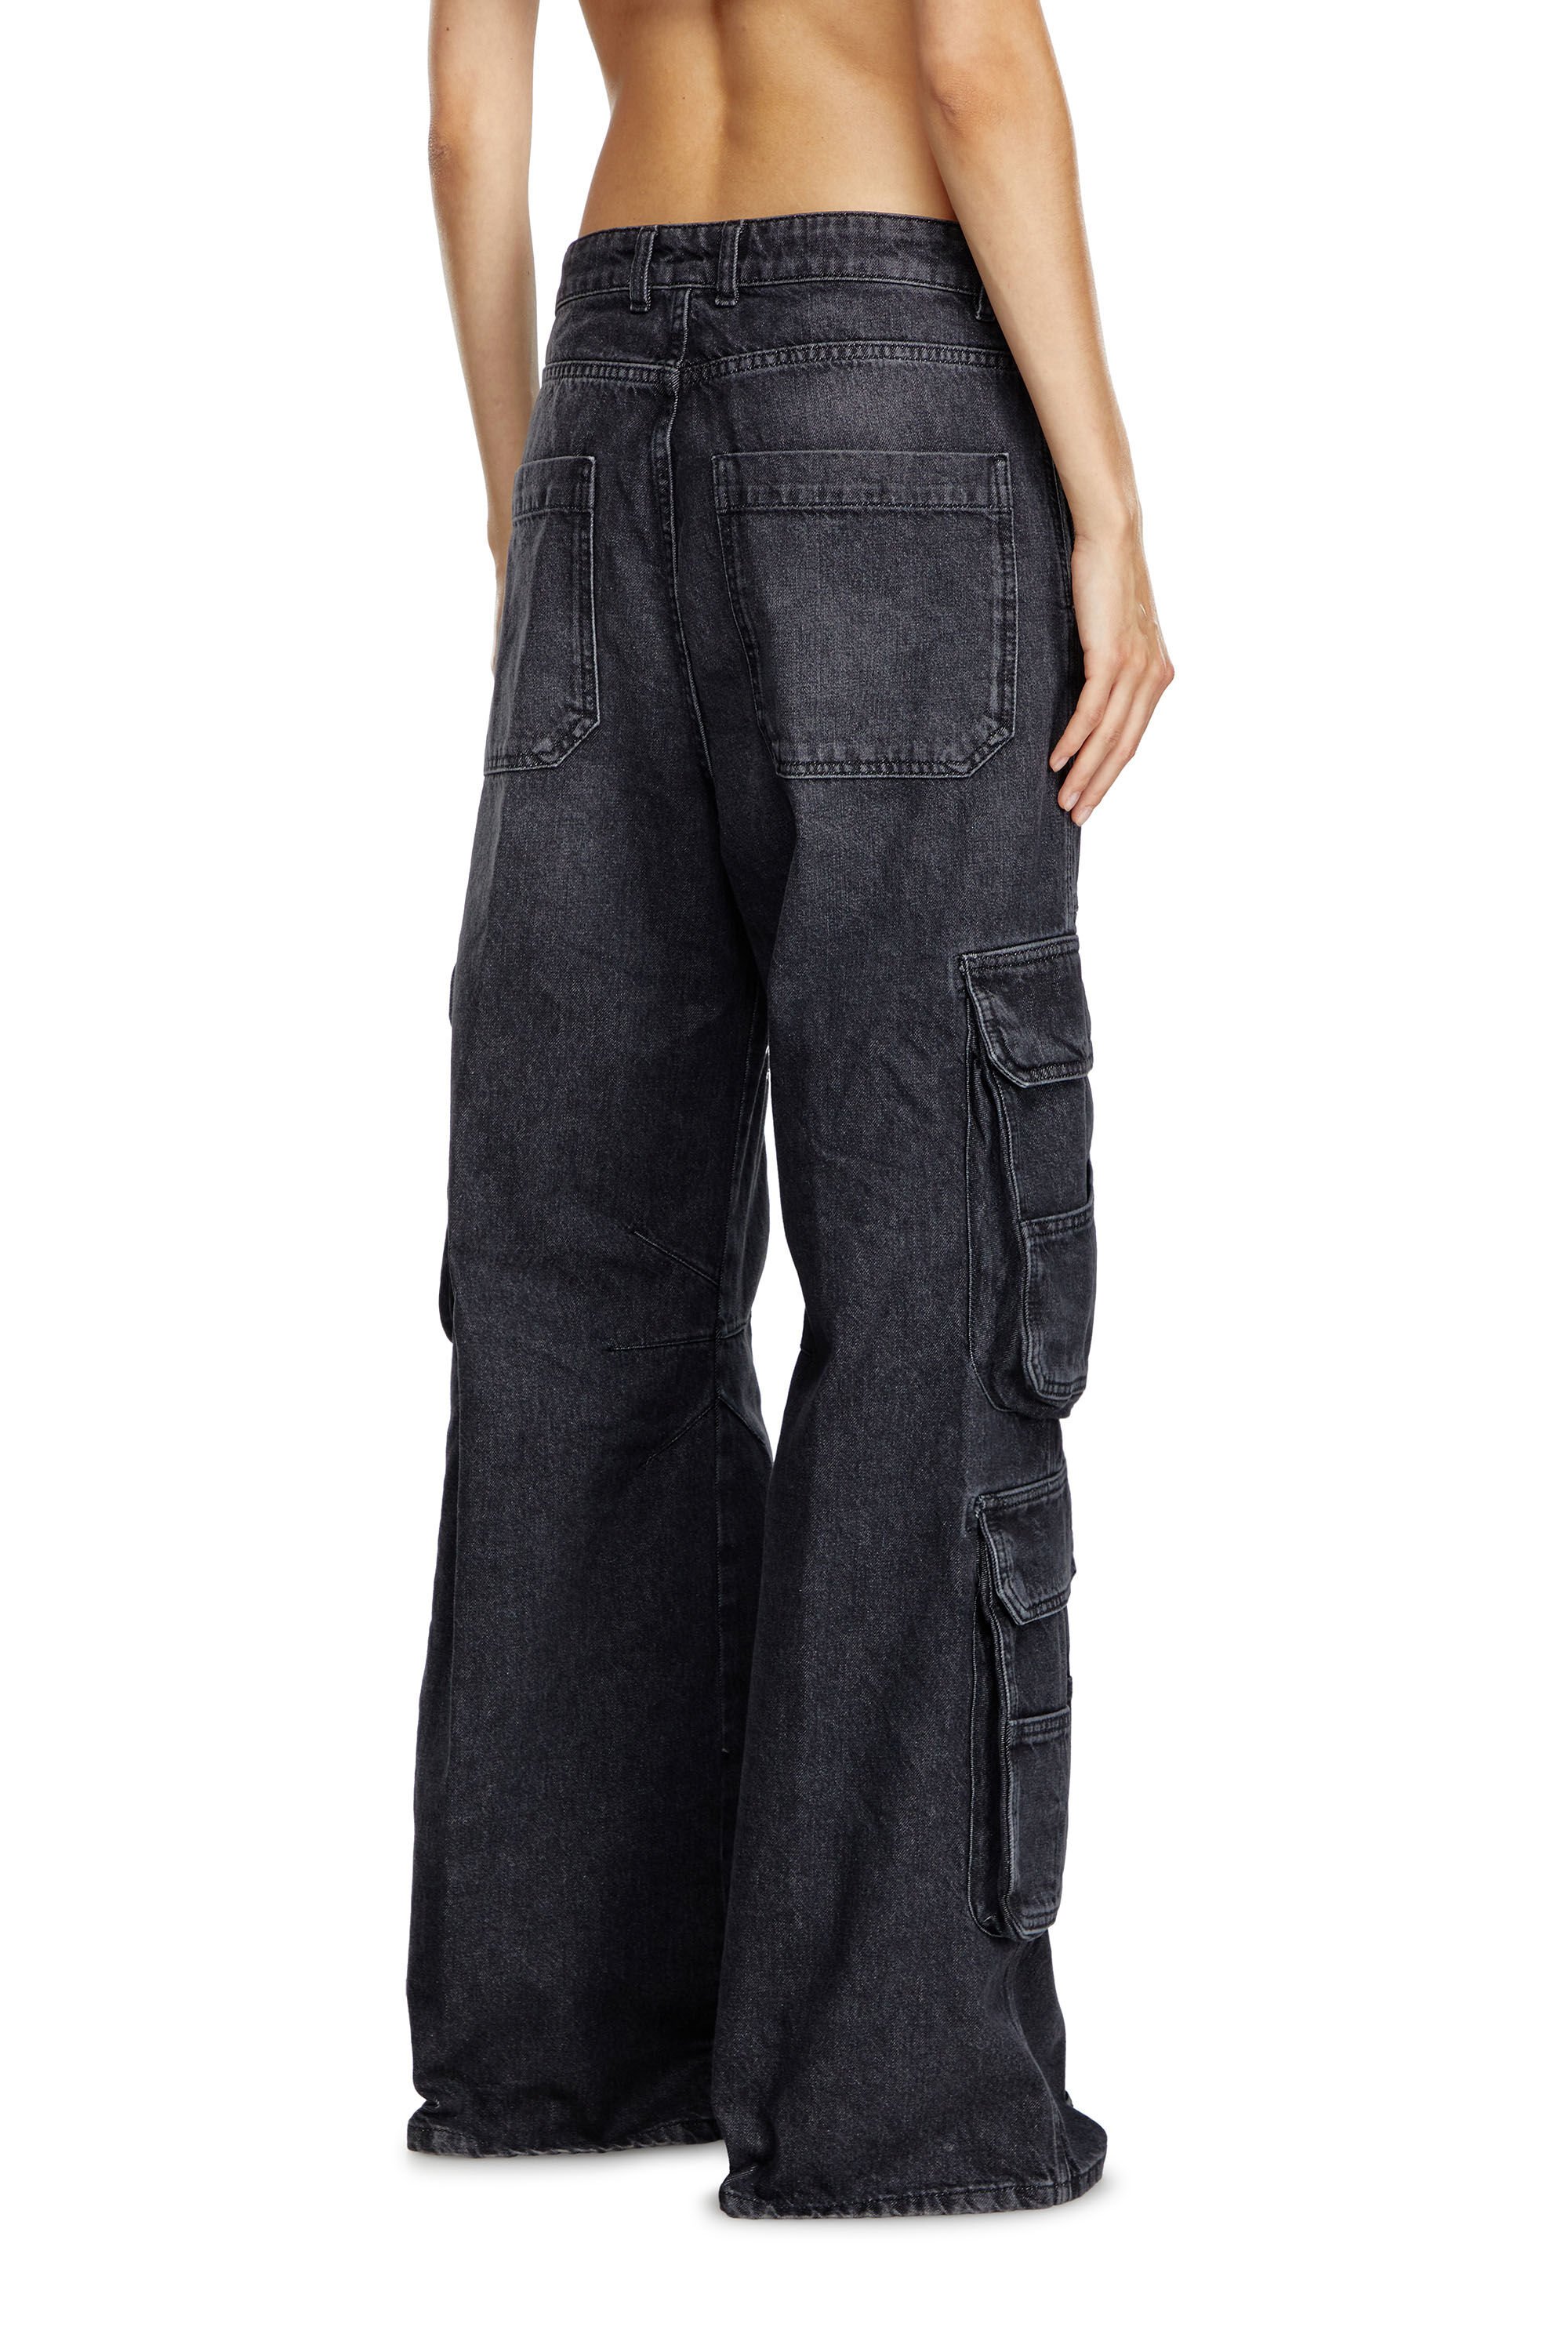 Diesel - Woman Straight Jeans 1996 D-Sire 0HLAA, Black/Dark grey - Image 5